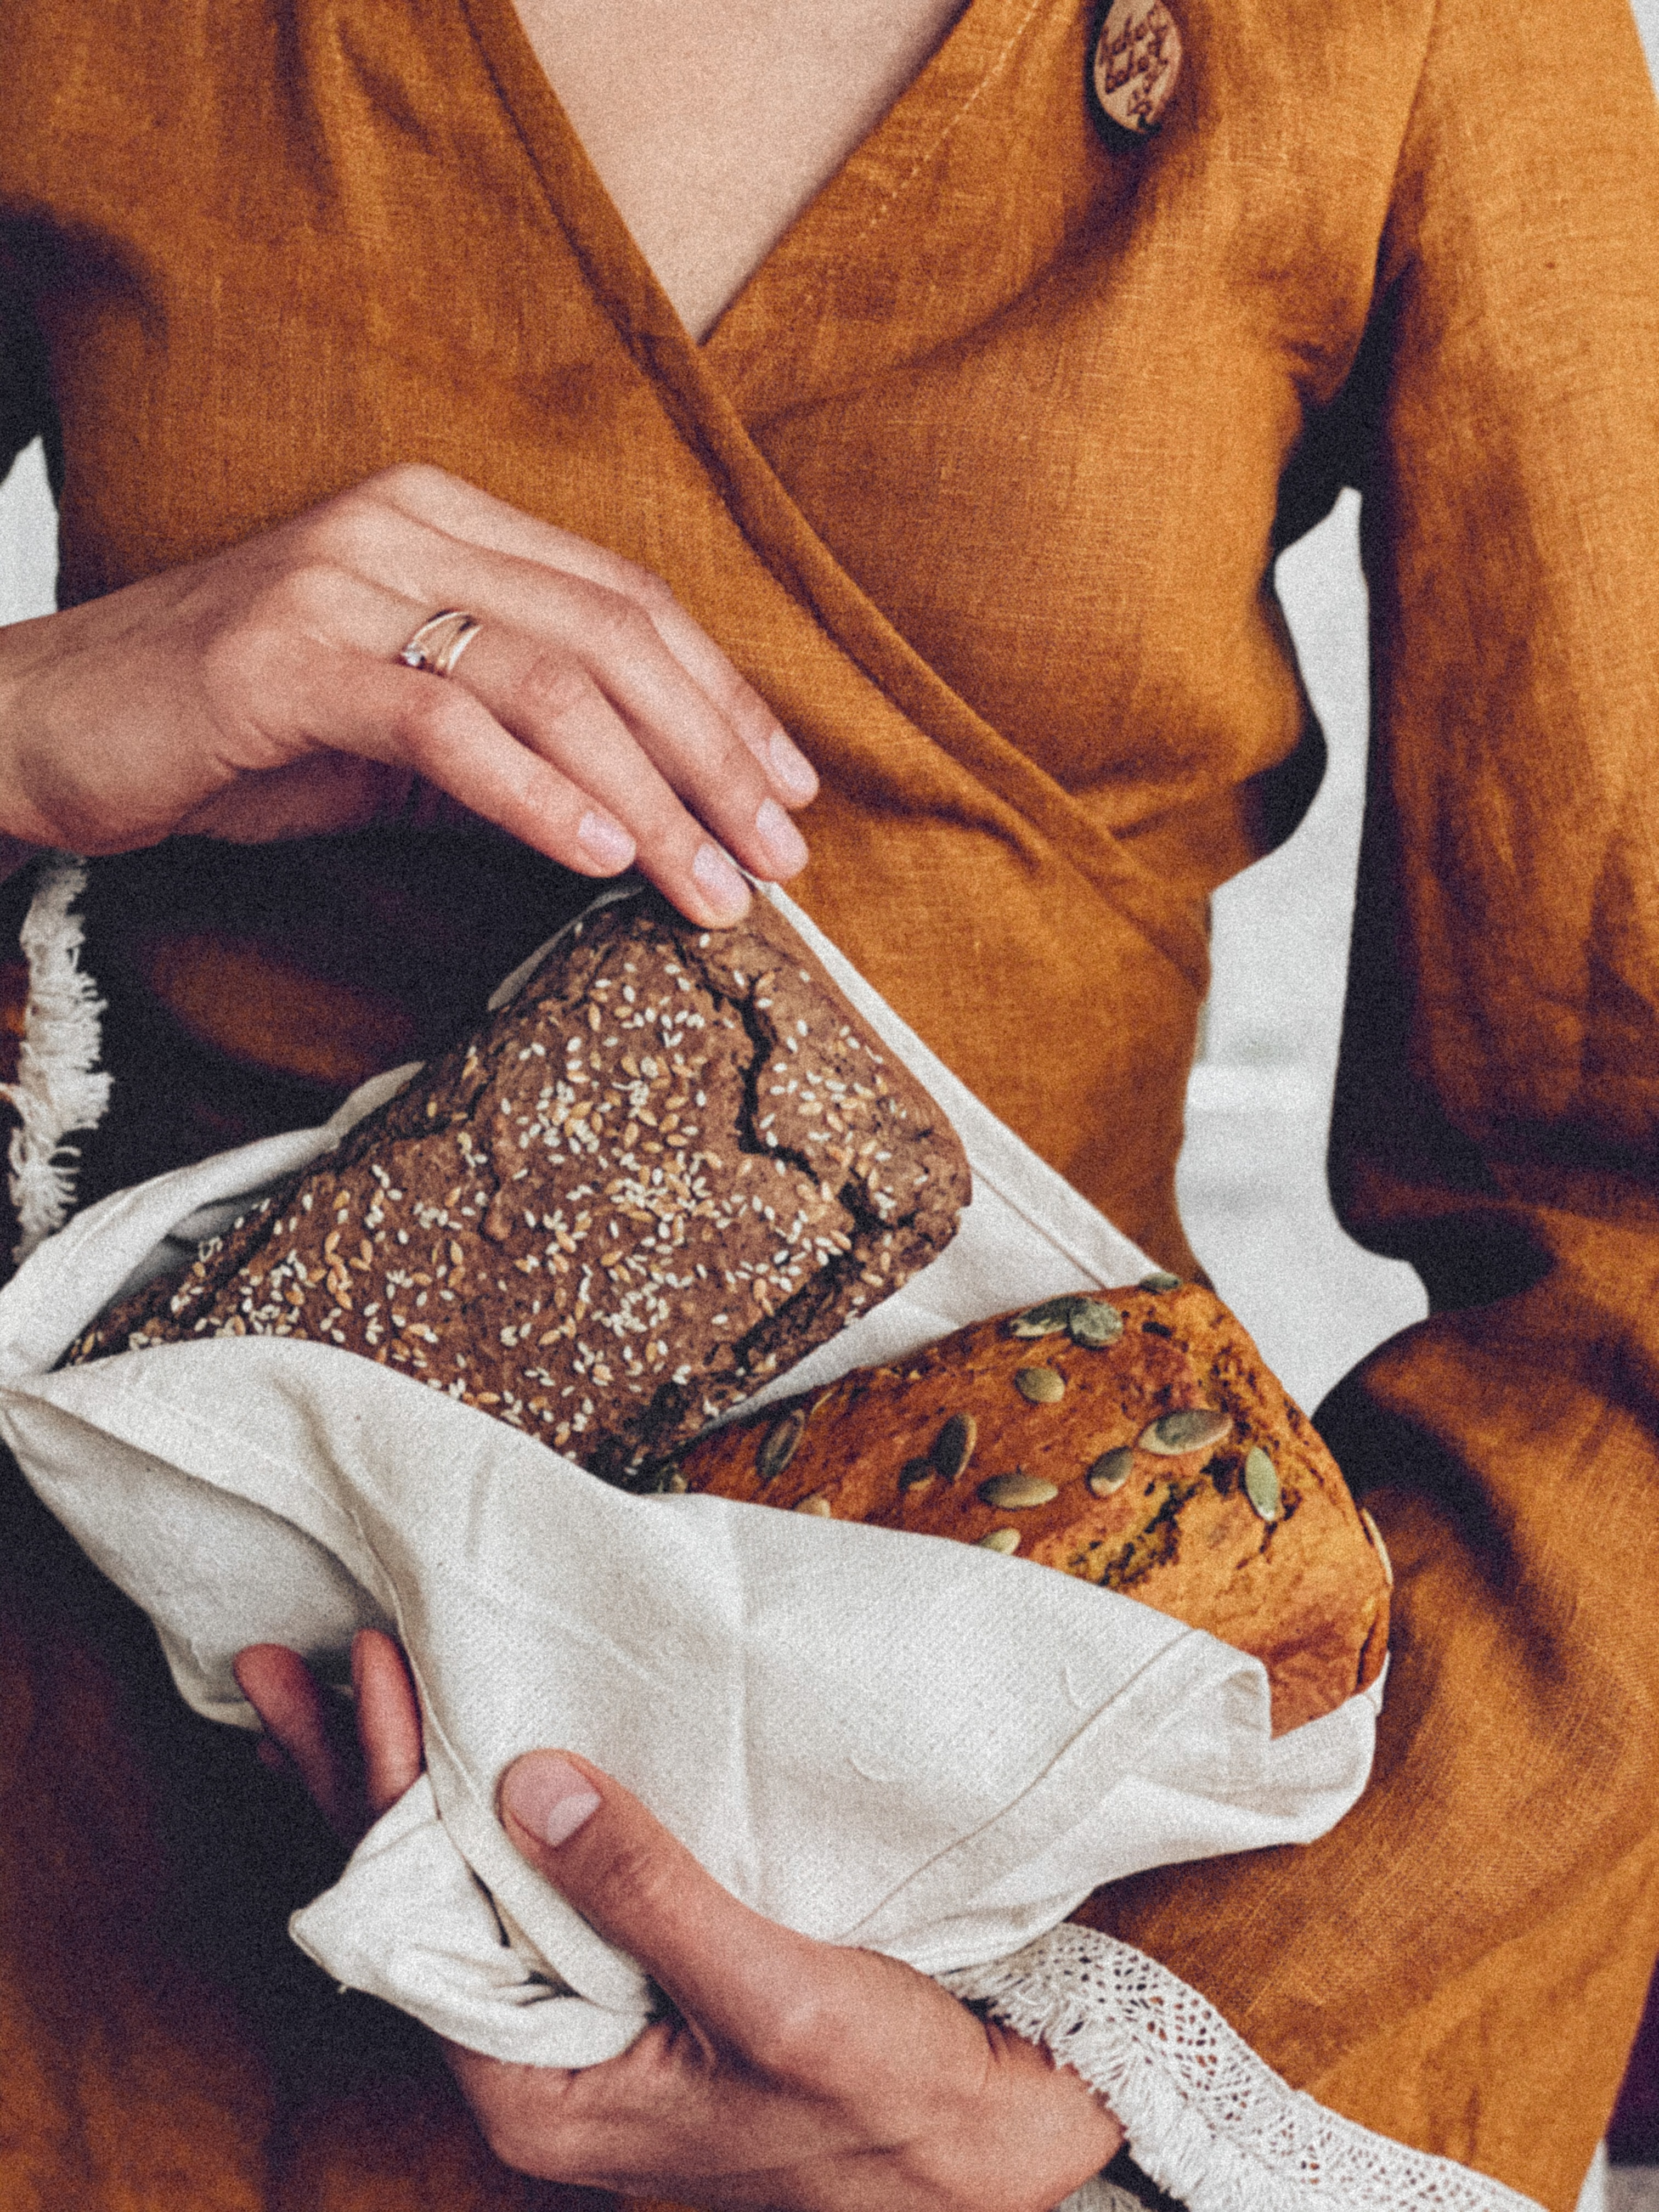 Как выбрать полезный хлеб и правильно его хранить?